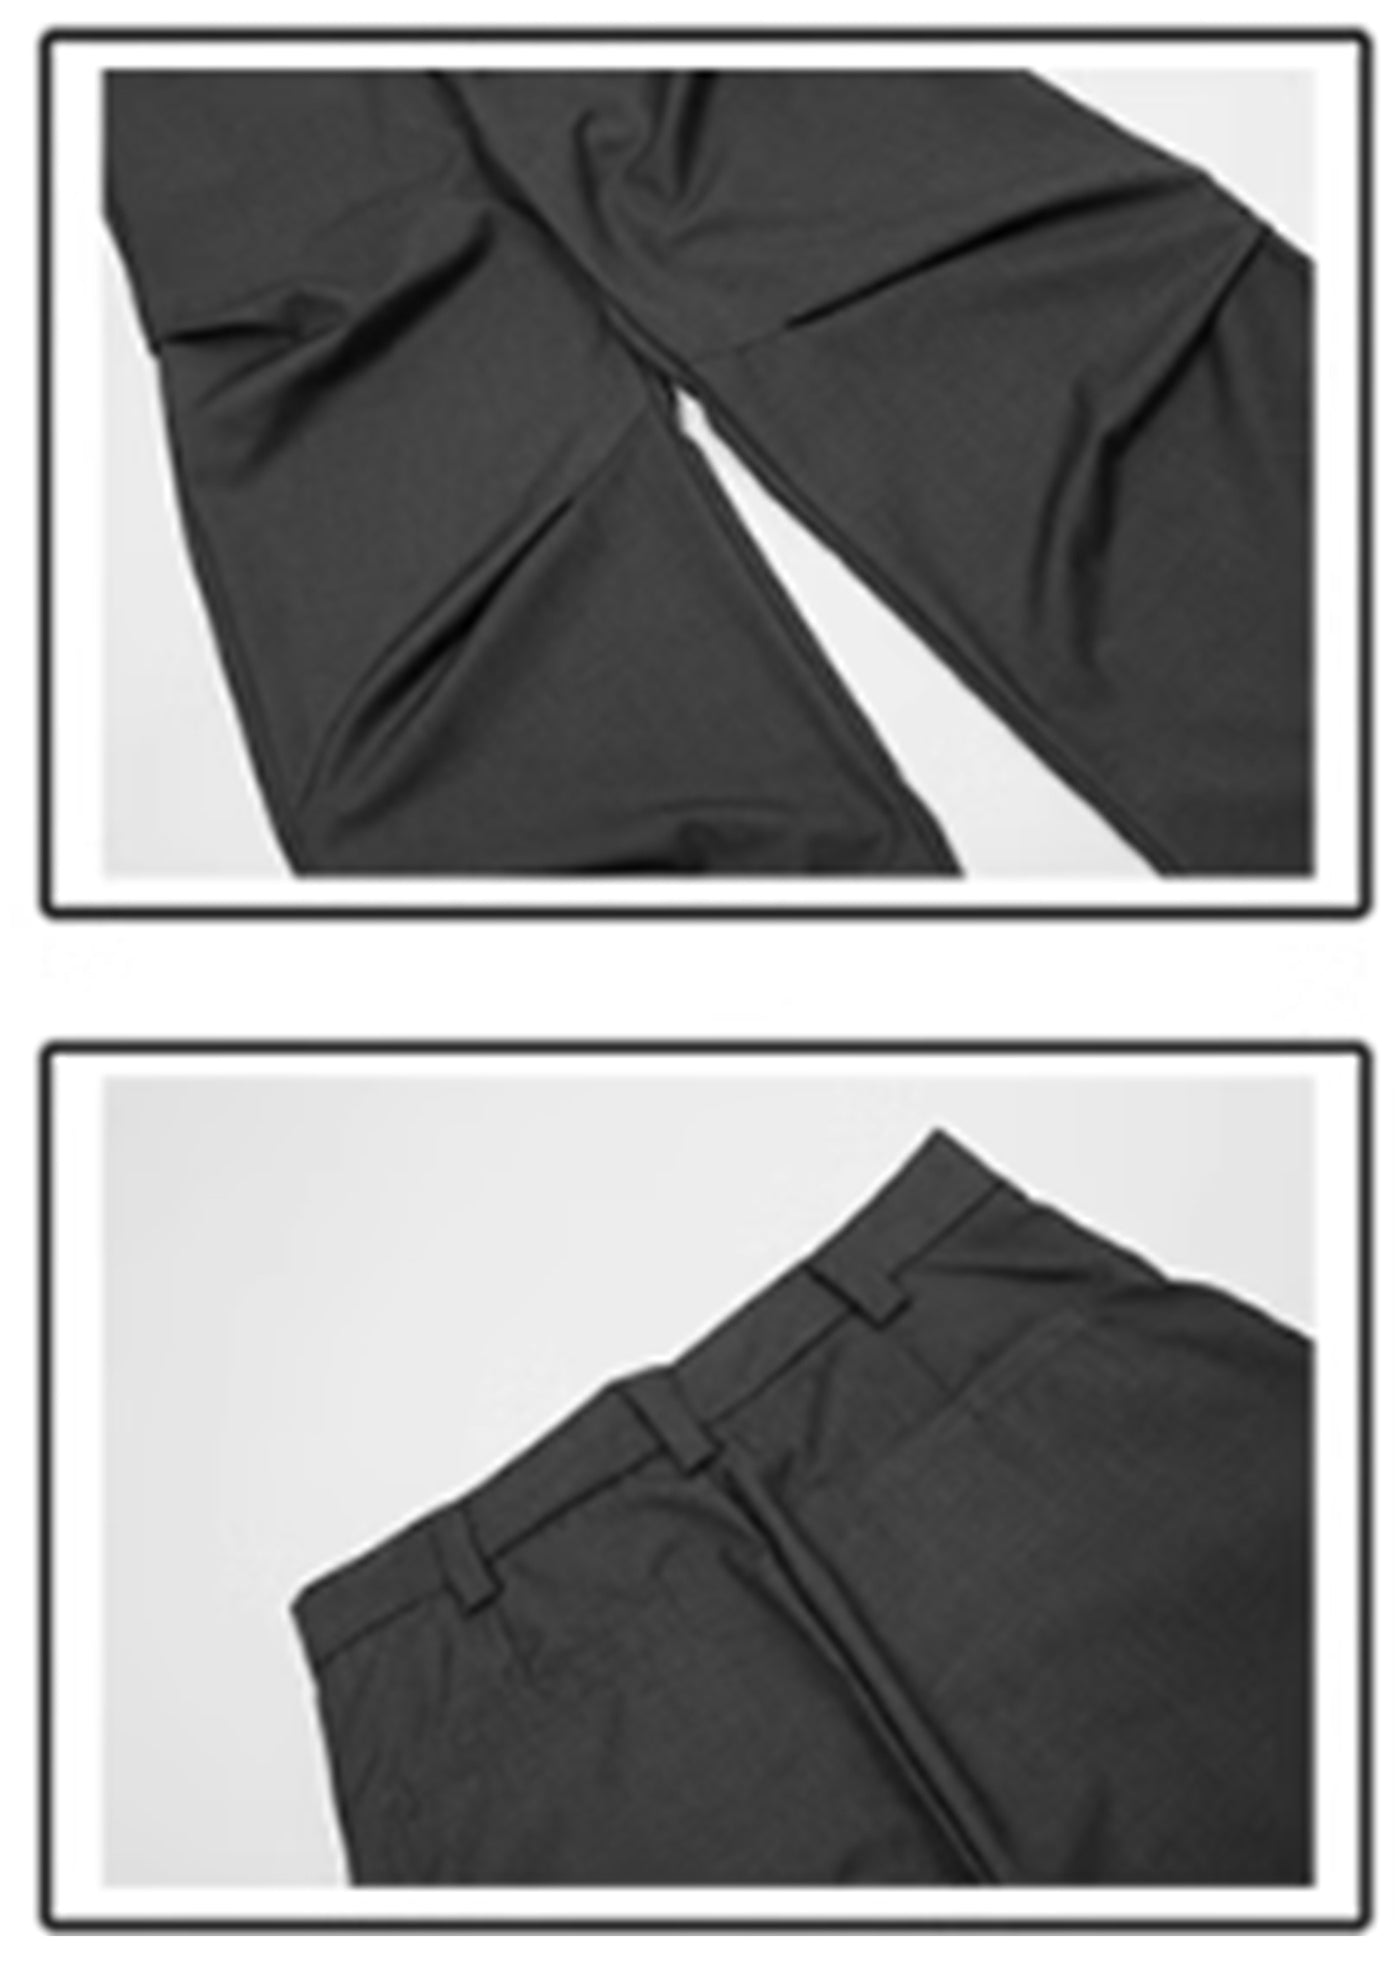 【76street】Overall tuck-in bell road silhouette slacks pants  ST0014